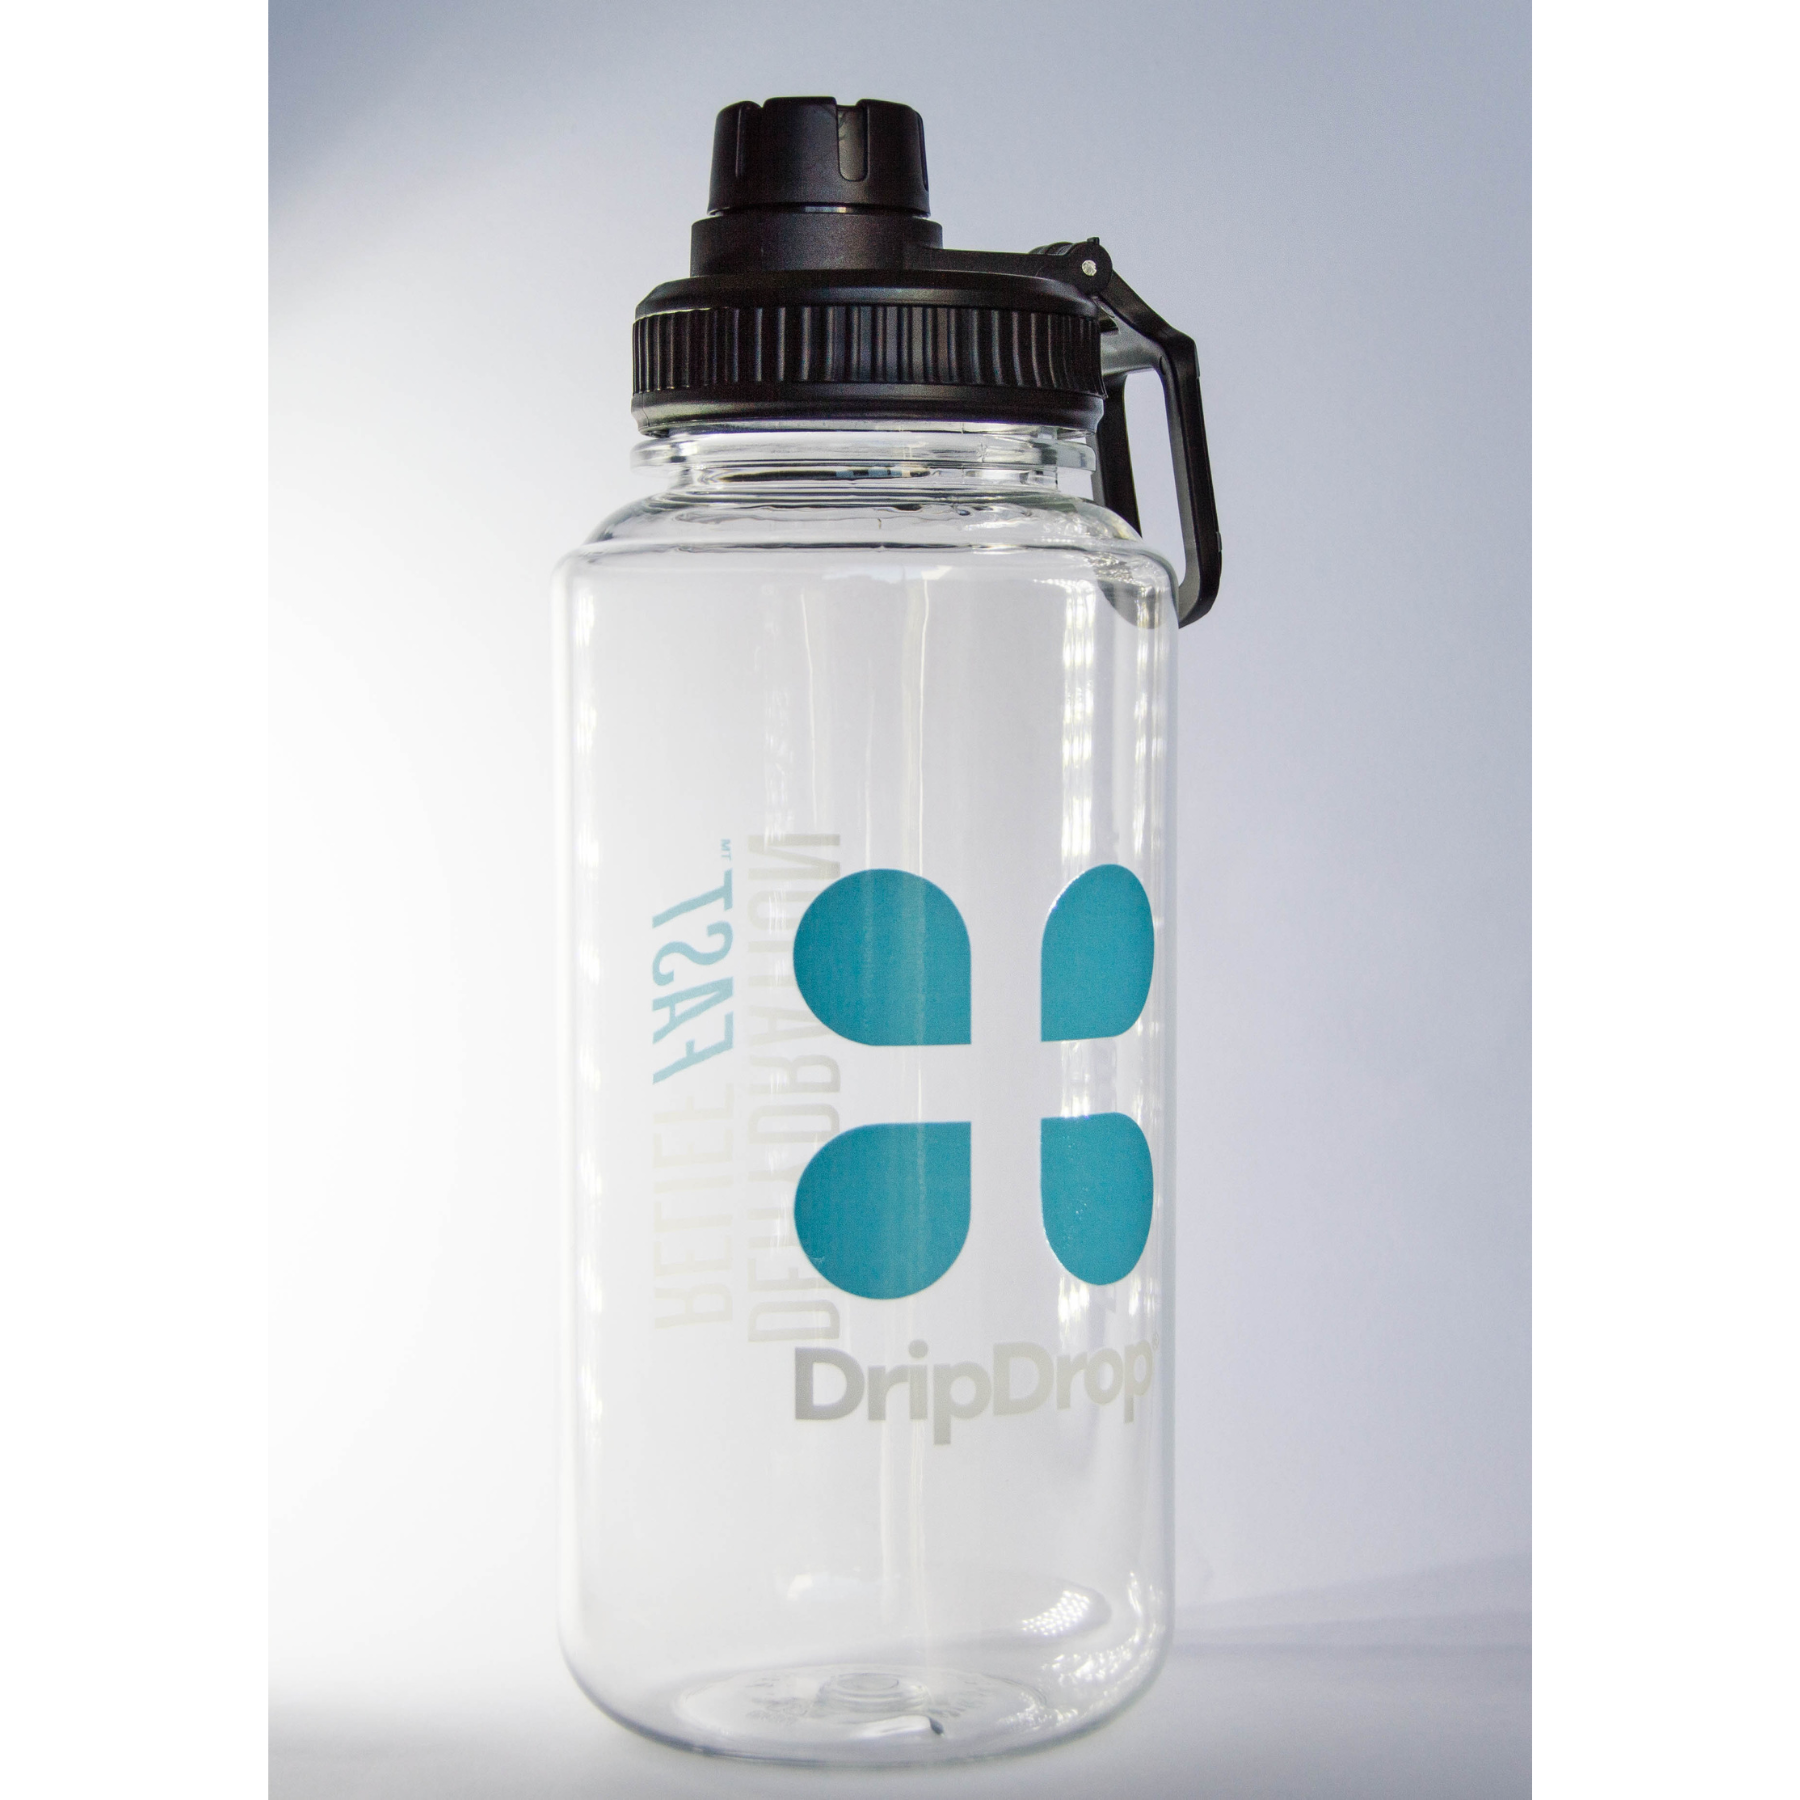 DripDrop 1 litre Water Bottle